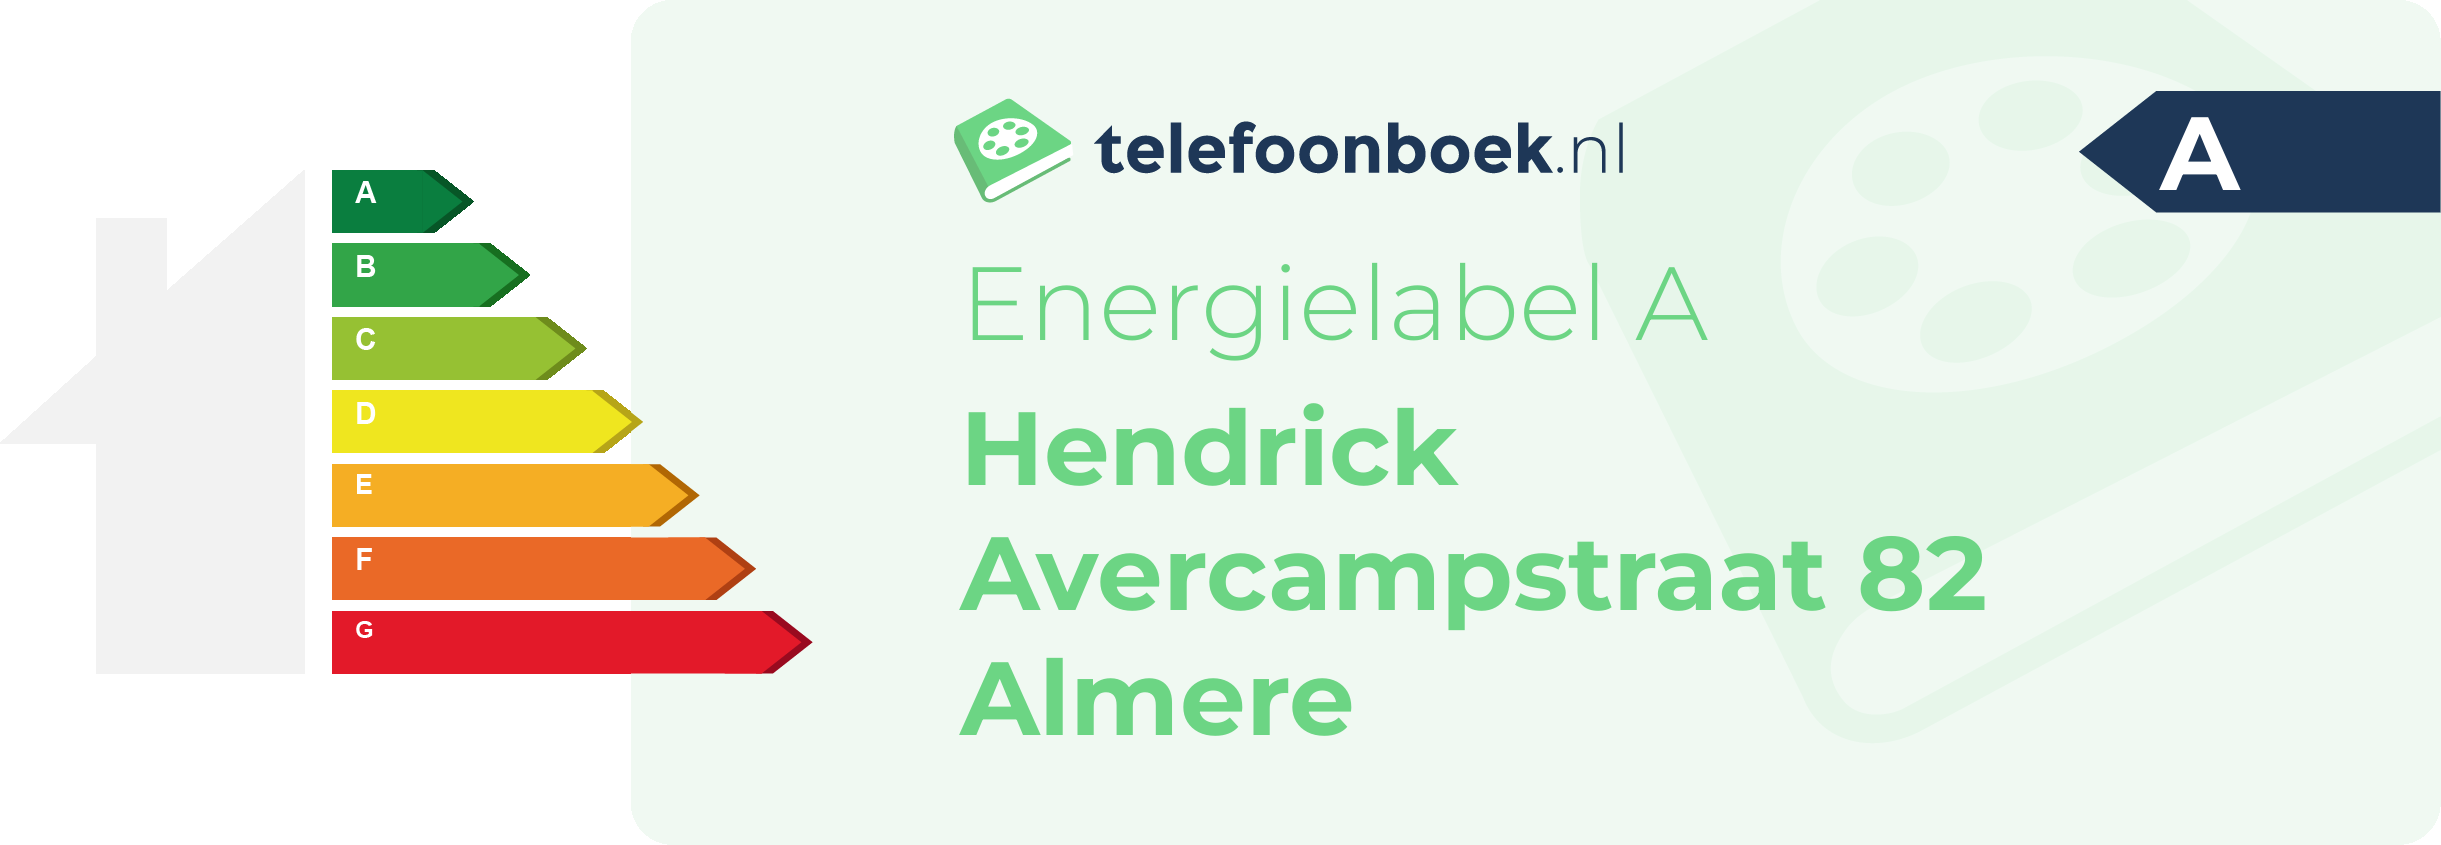 Energielabel Hendrick Avercampstraat 82 Almere